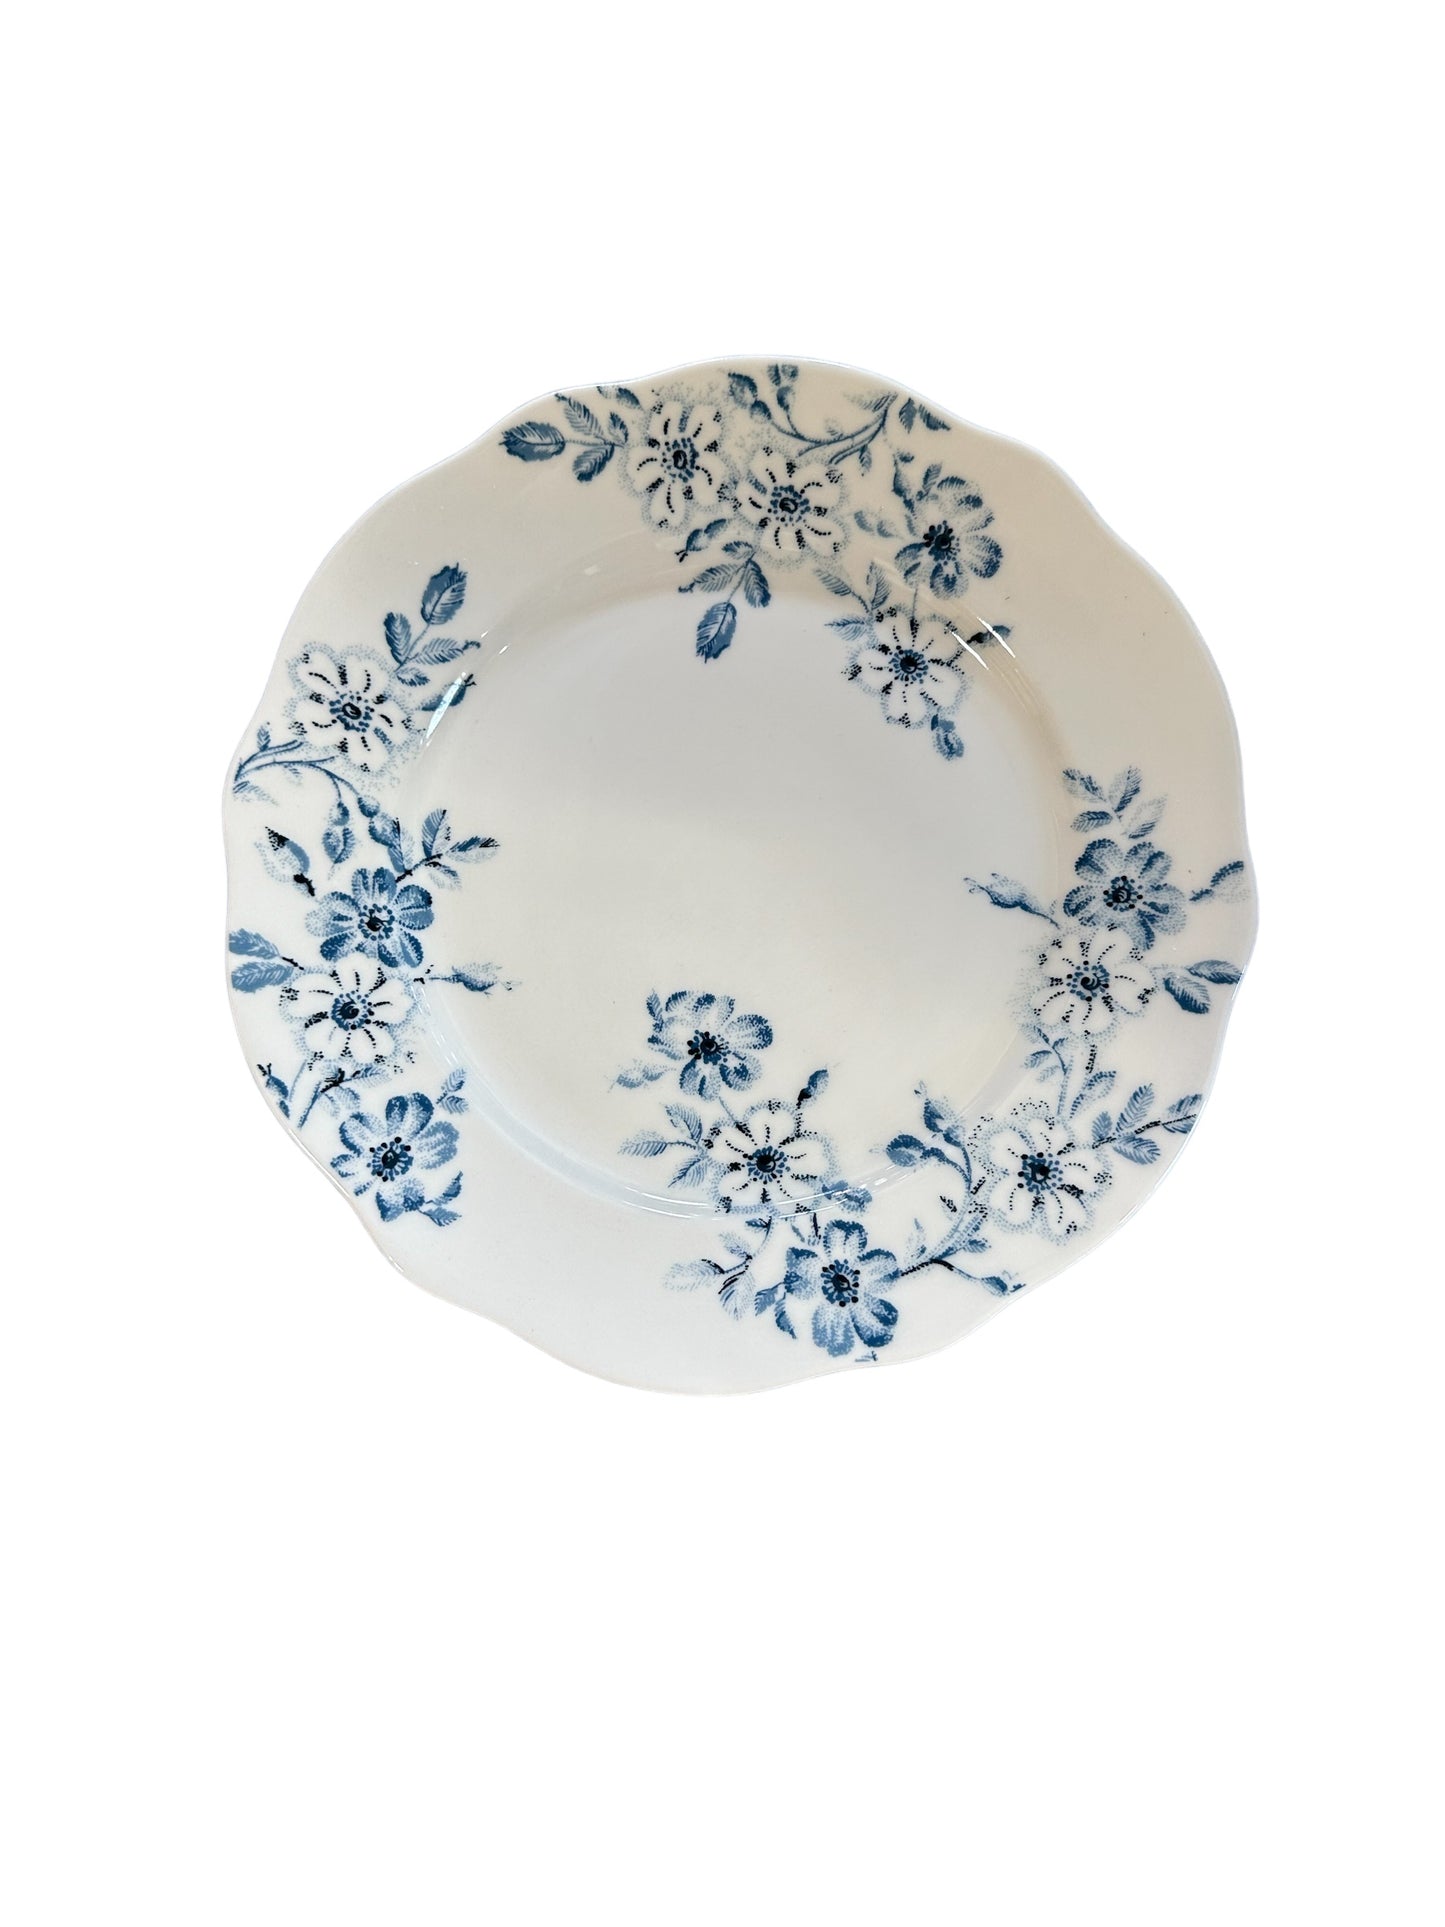 Plate / Salad / Blue Cottage Floral (TAG17962)